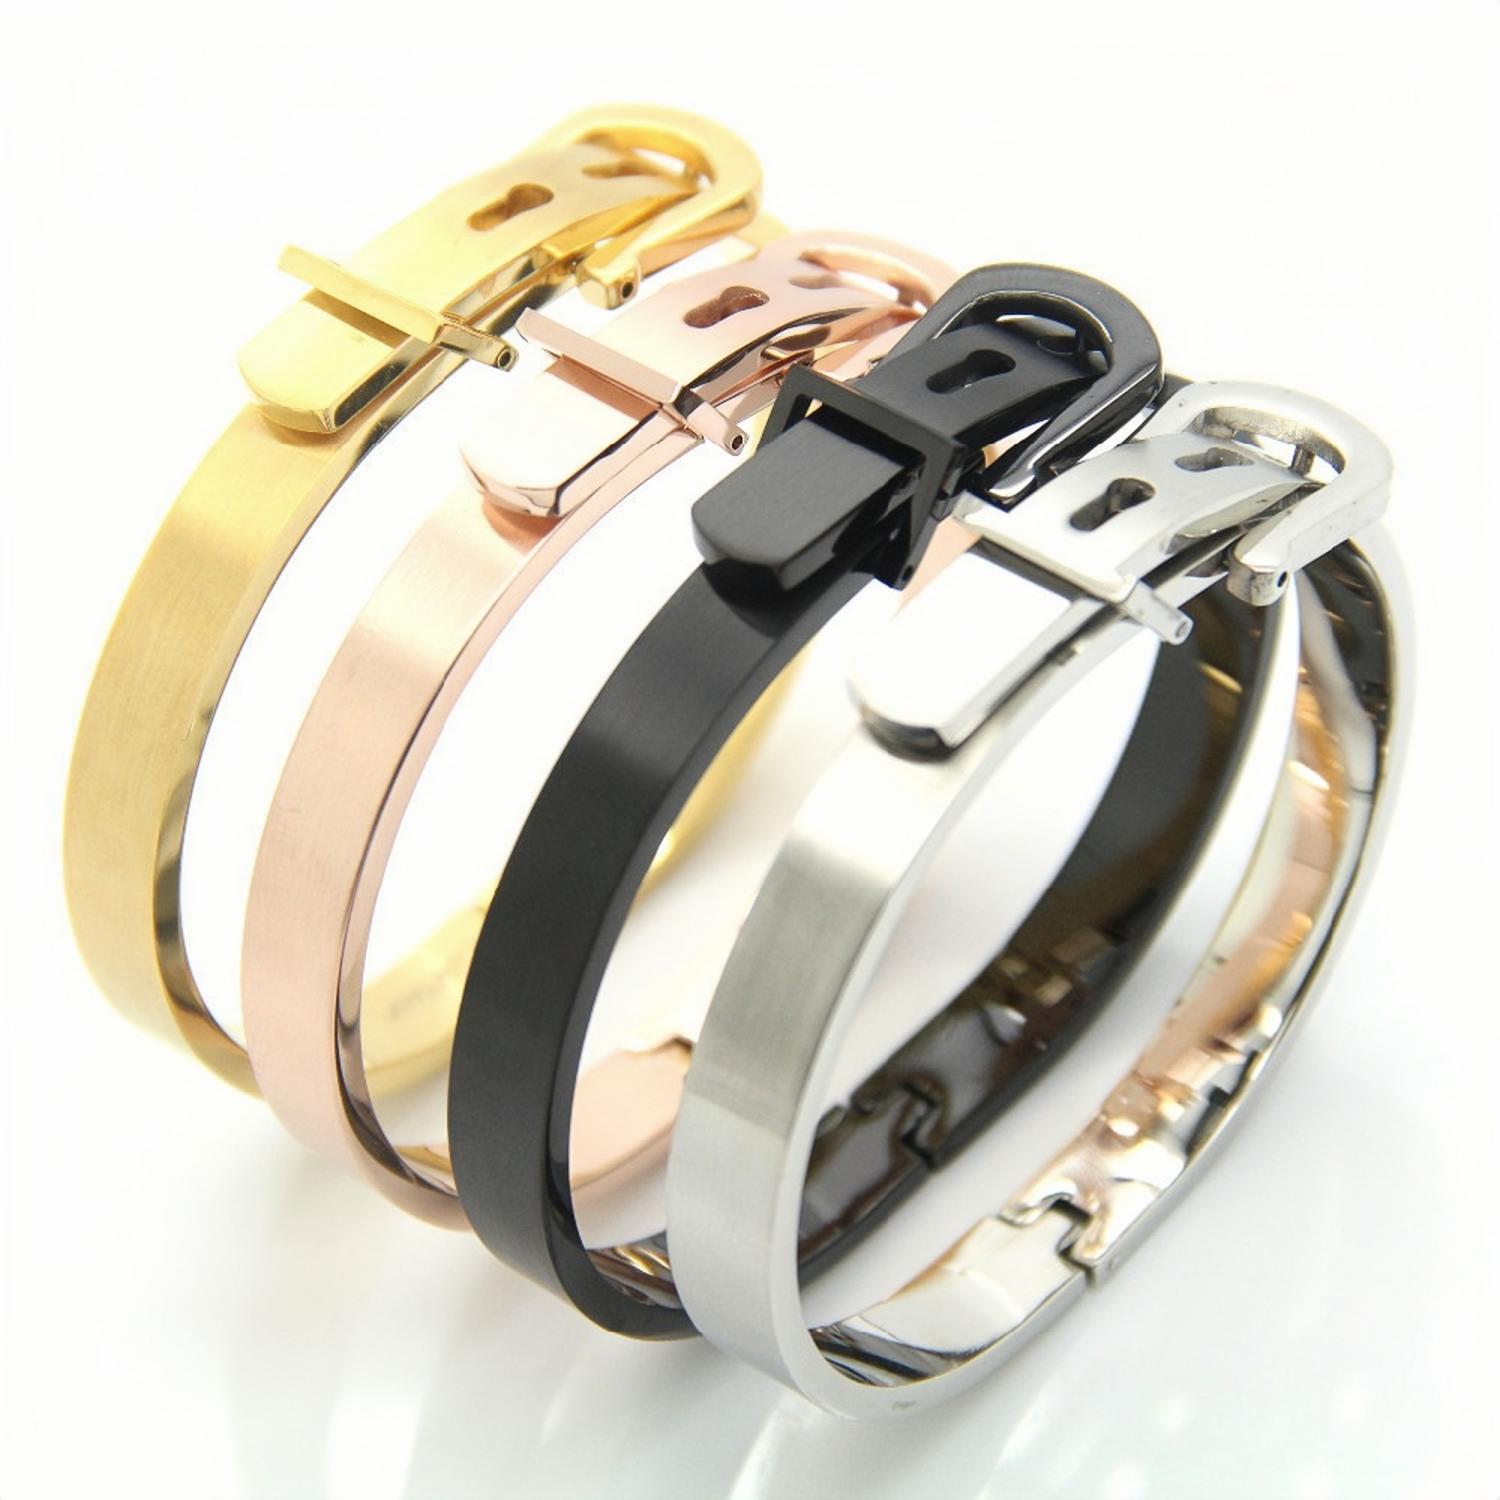 Unique Matching Belt Bracelets For Couples In Titanium - CoupleSets